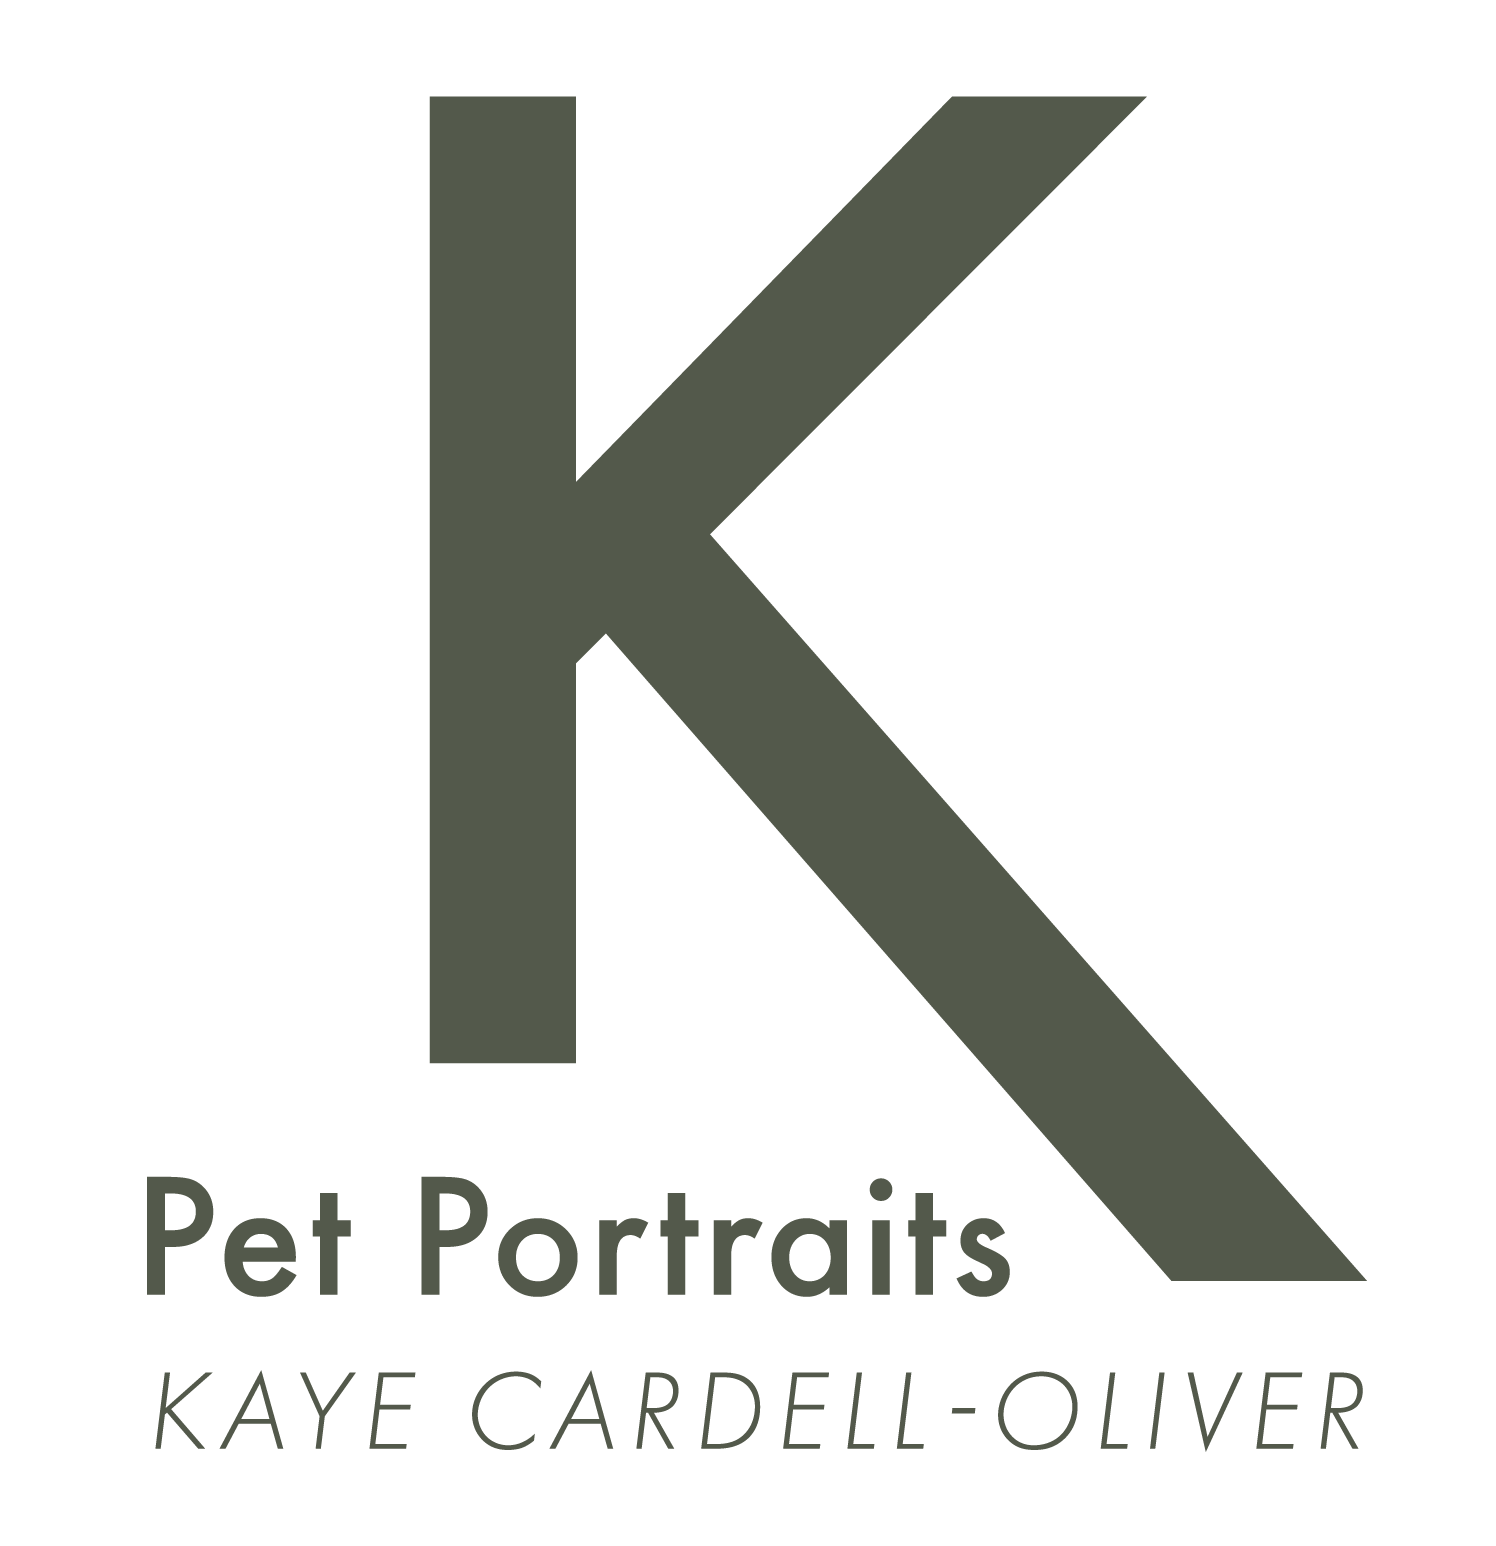 Kaye Cardell-Oliver Portrait Artist